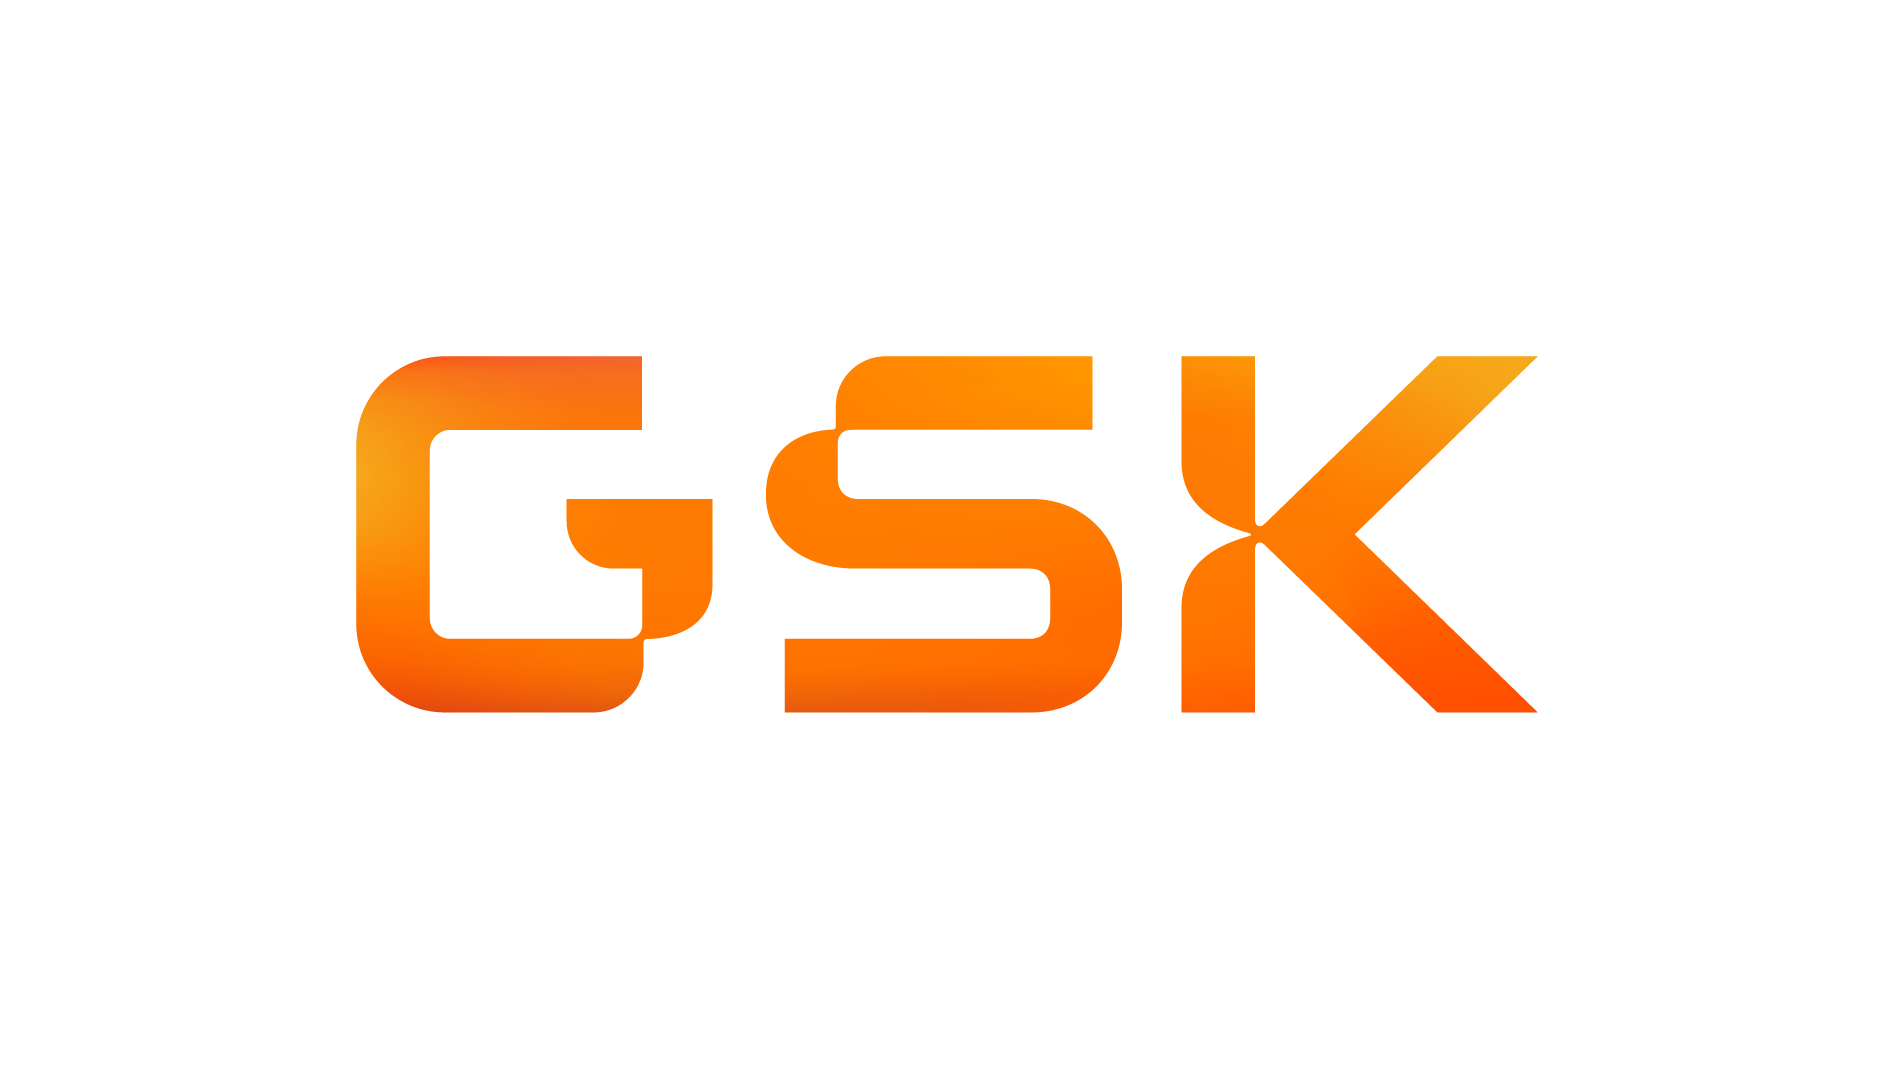 Logo for GSK